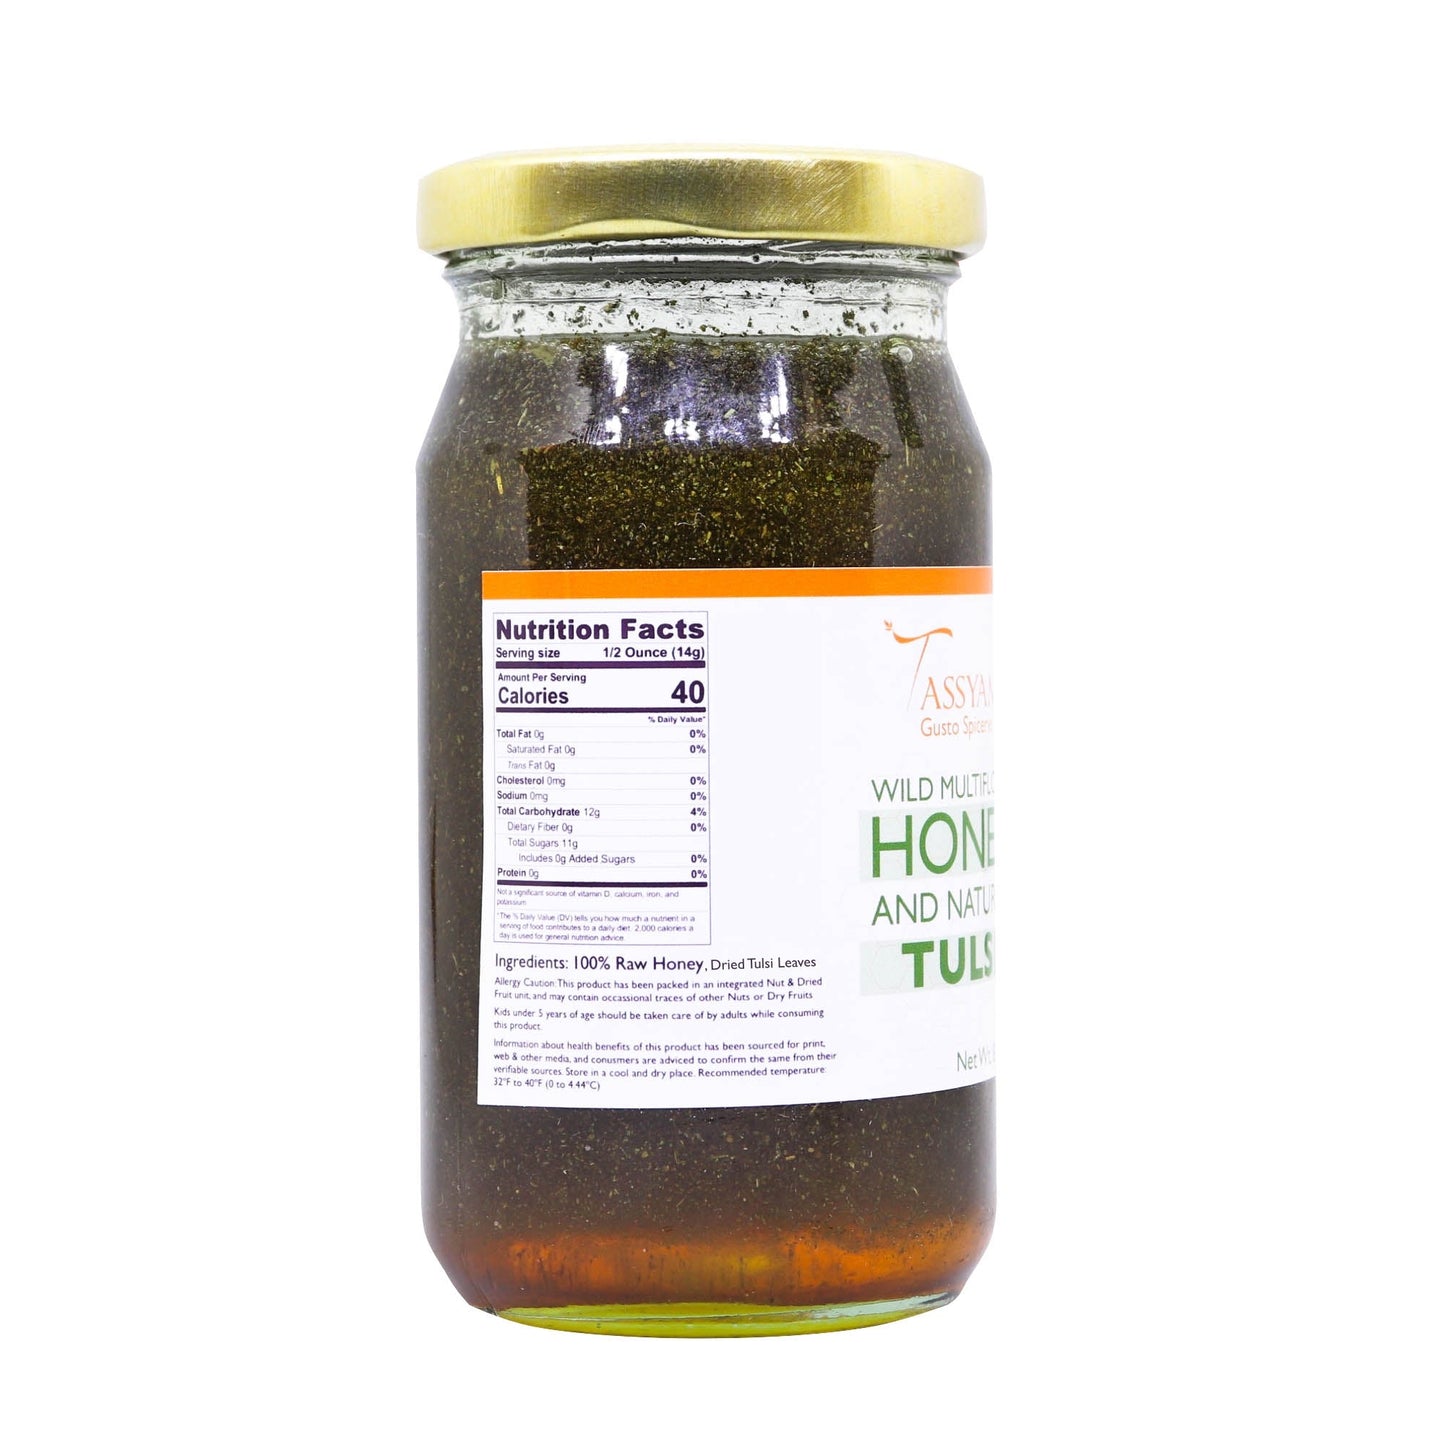 Wild Honey with Natural Dried Tulsi 250g - Tassyam Organics